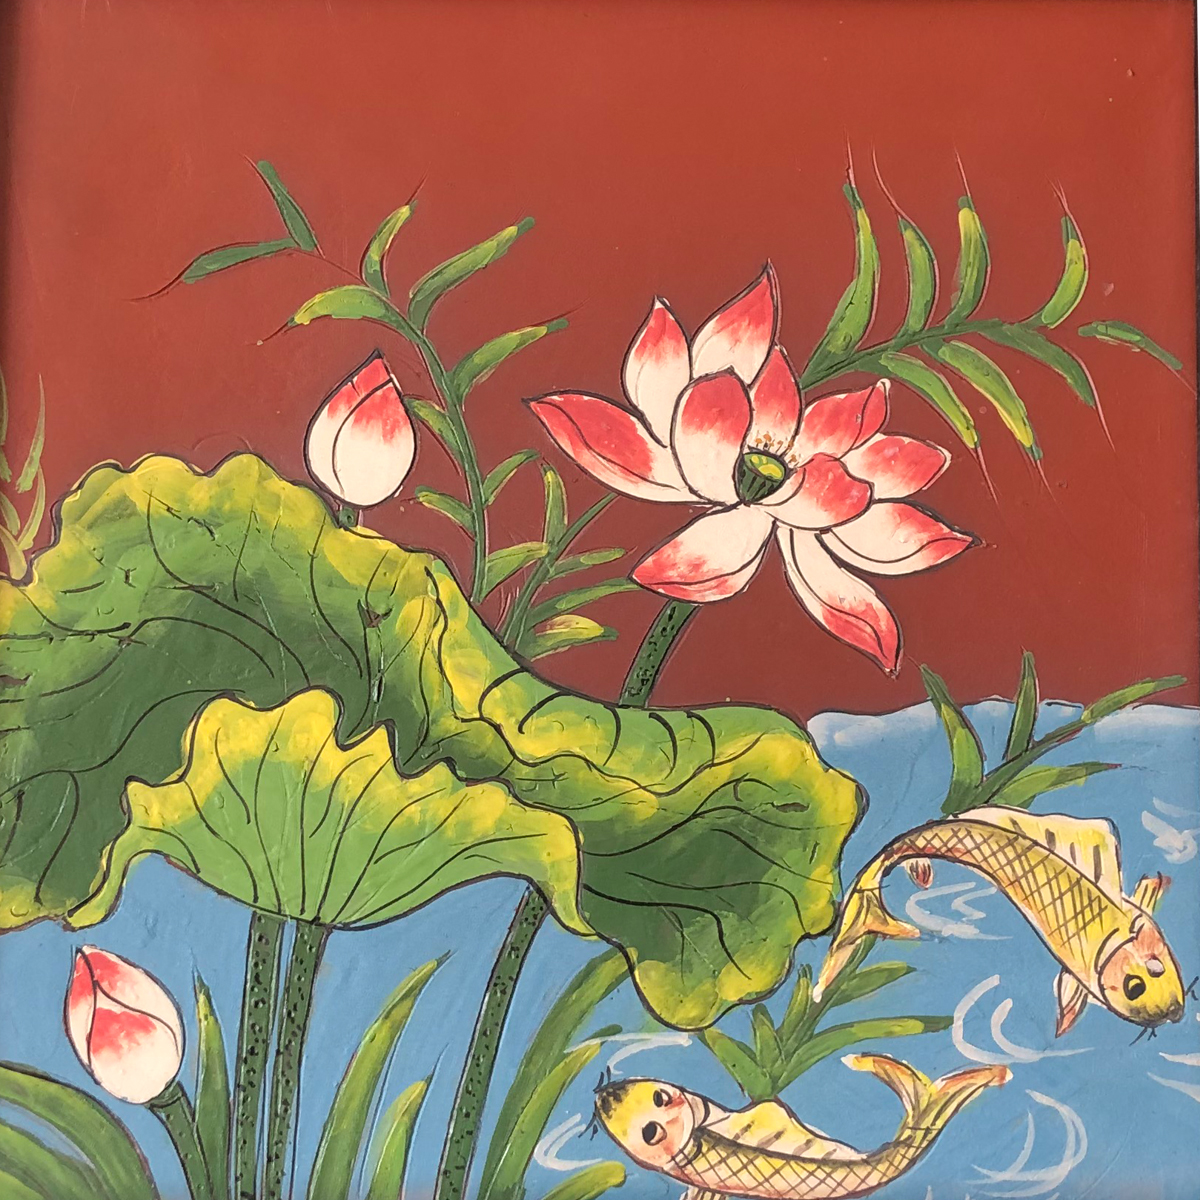 Tranh gốm Bát Tràng cá chép đầm sen đậm chất Việt Nam sẽ giúp bạn khám phá vẻ đẹp truyền thống của nghệ thuật gốm sứ Bát Tràng của Việt Nam. Với hình ảnh cá chép đầm sen may mắn và quý phái, bức tranh sẽ tạo nên một không gian trang trọng và độc đáo trong ngôi nhà của bạn.